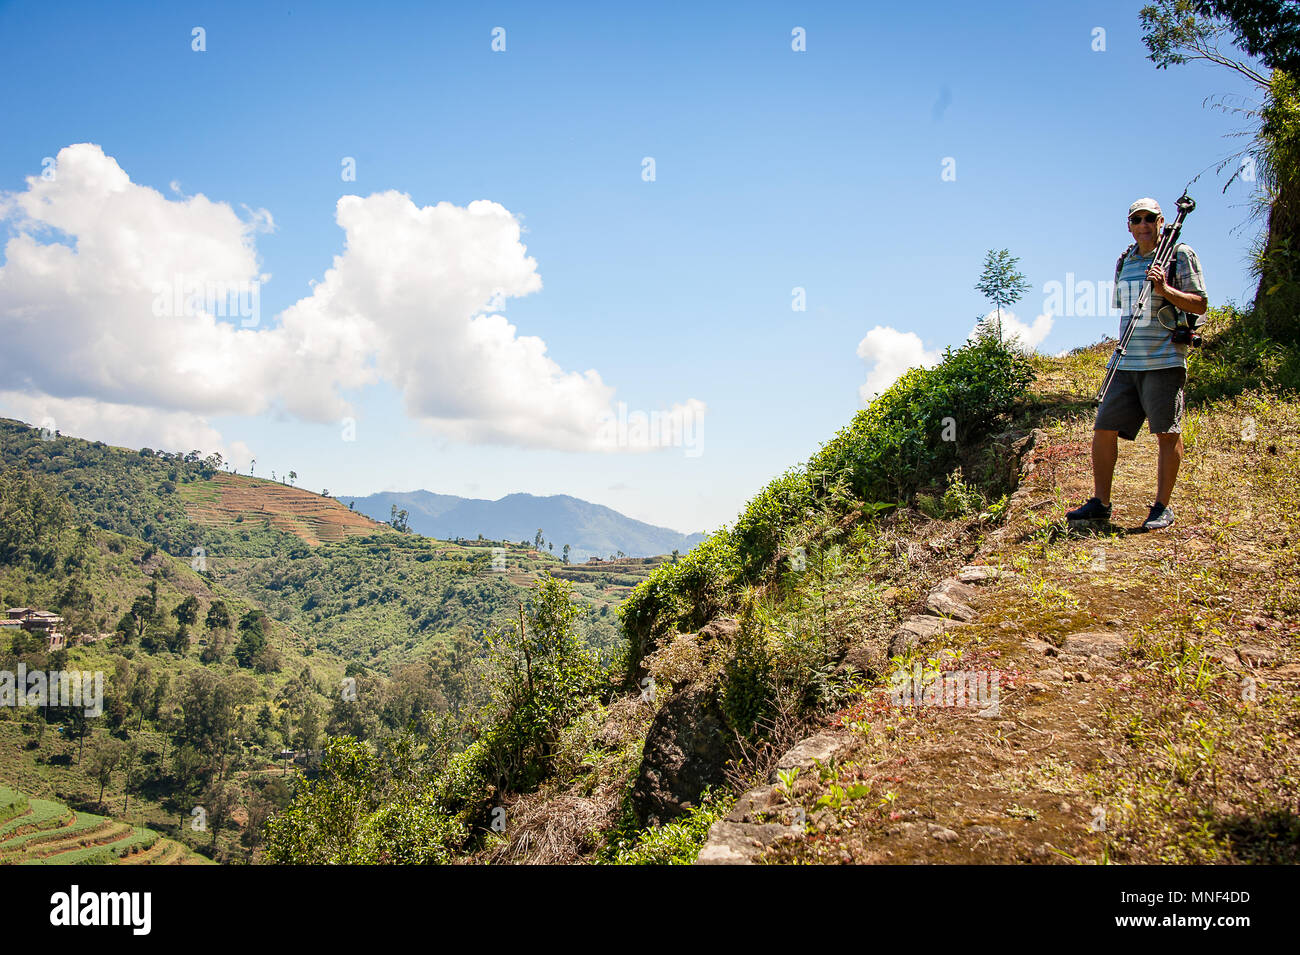 Un homme se tient sur une colline ombragée, sentier pédestre, à plus de plantations de thé, Ambewela, Sri Lanka. Village pittoresque paysage vert avec fond de ciel bleu Banque D'Images